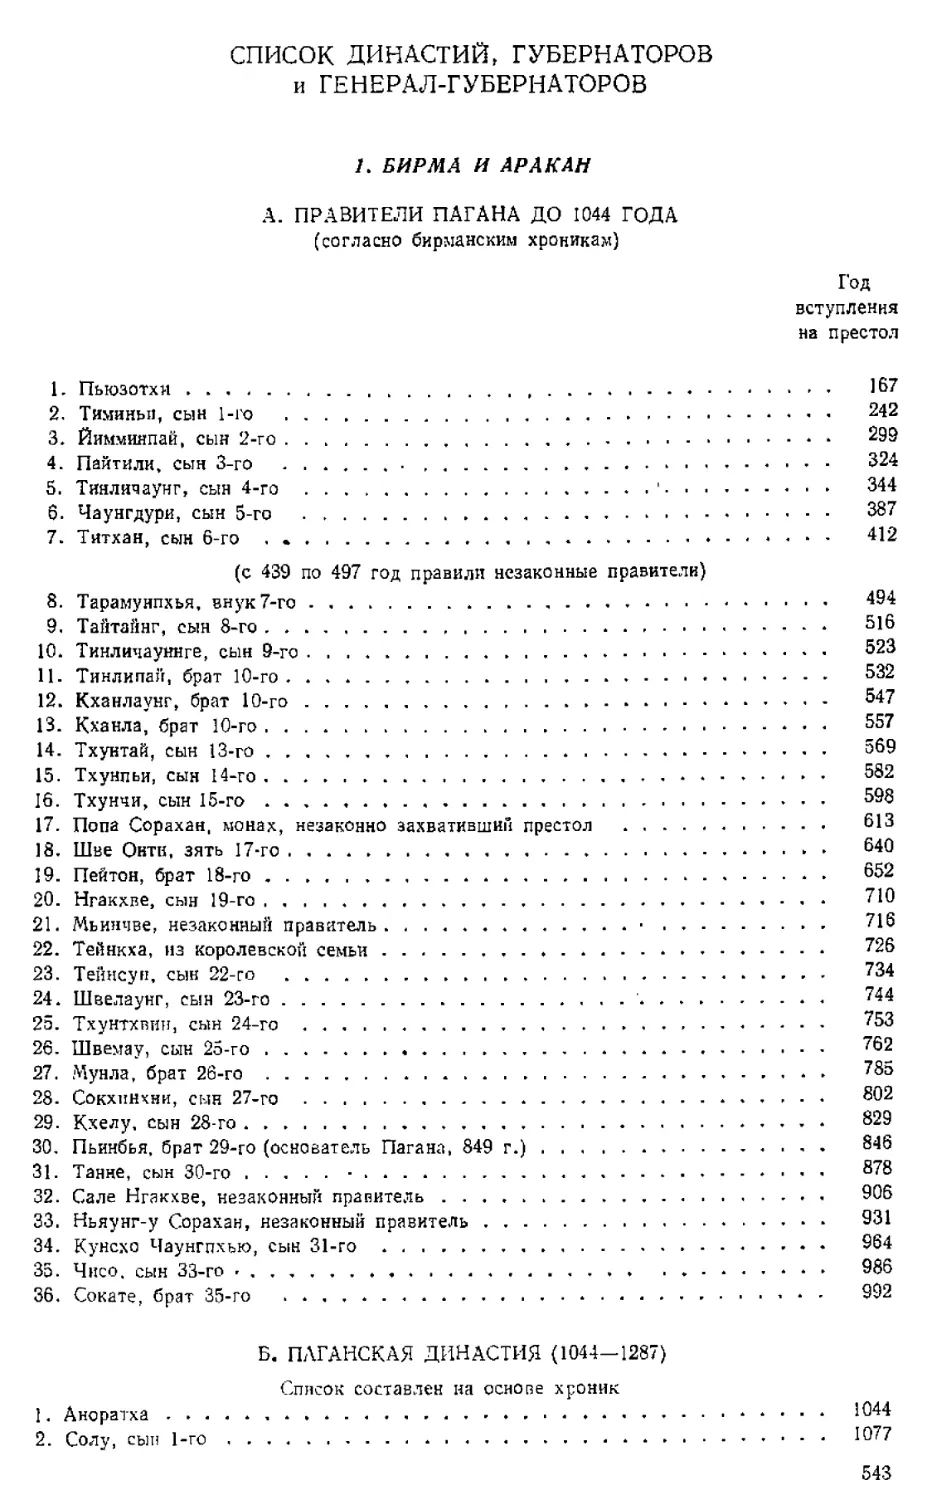 Список династий, губернаторов и генерал-губернаторов